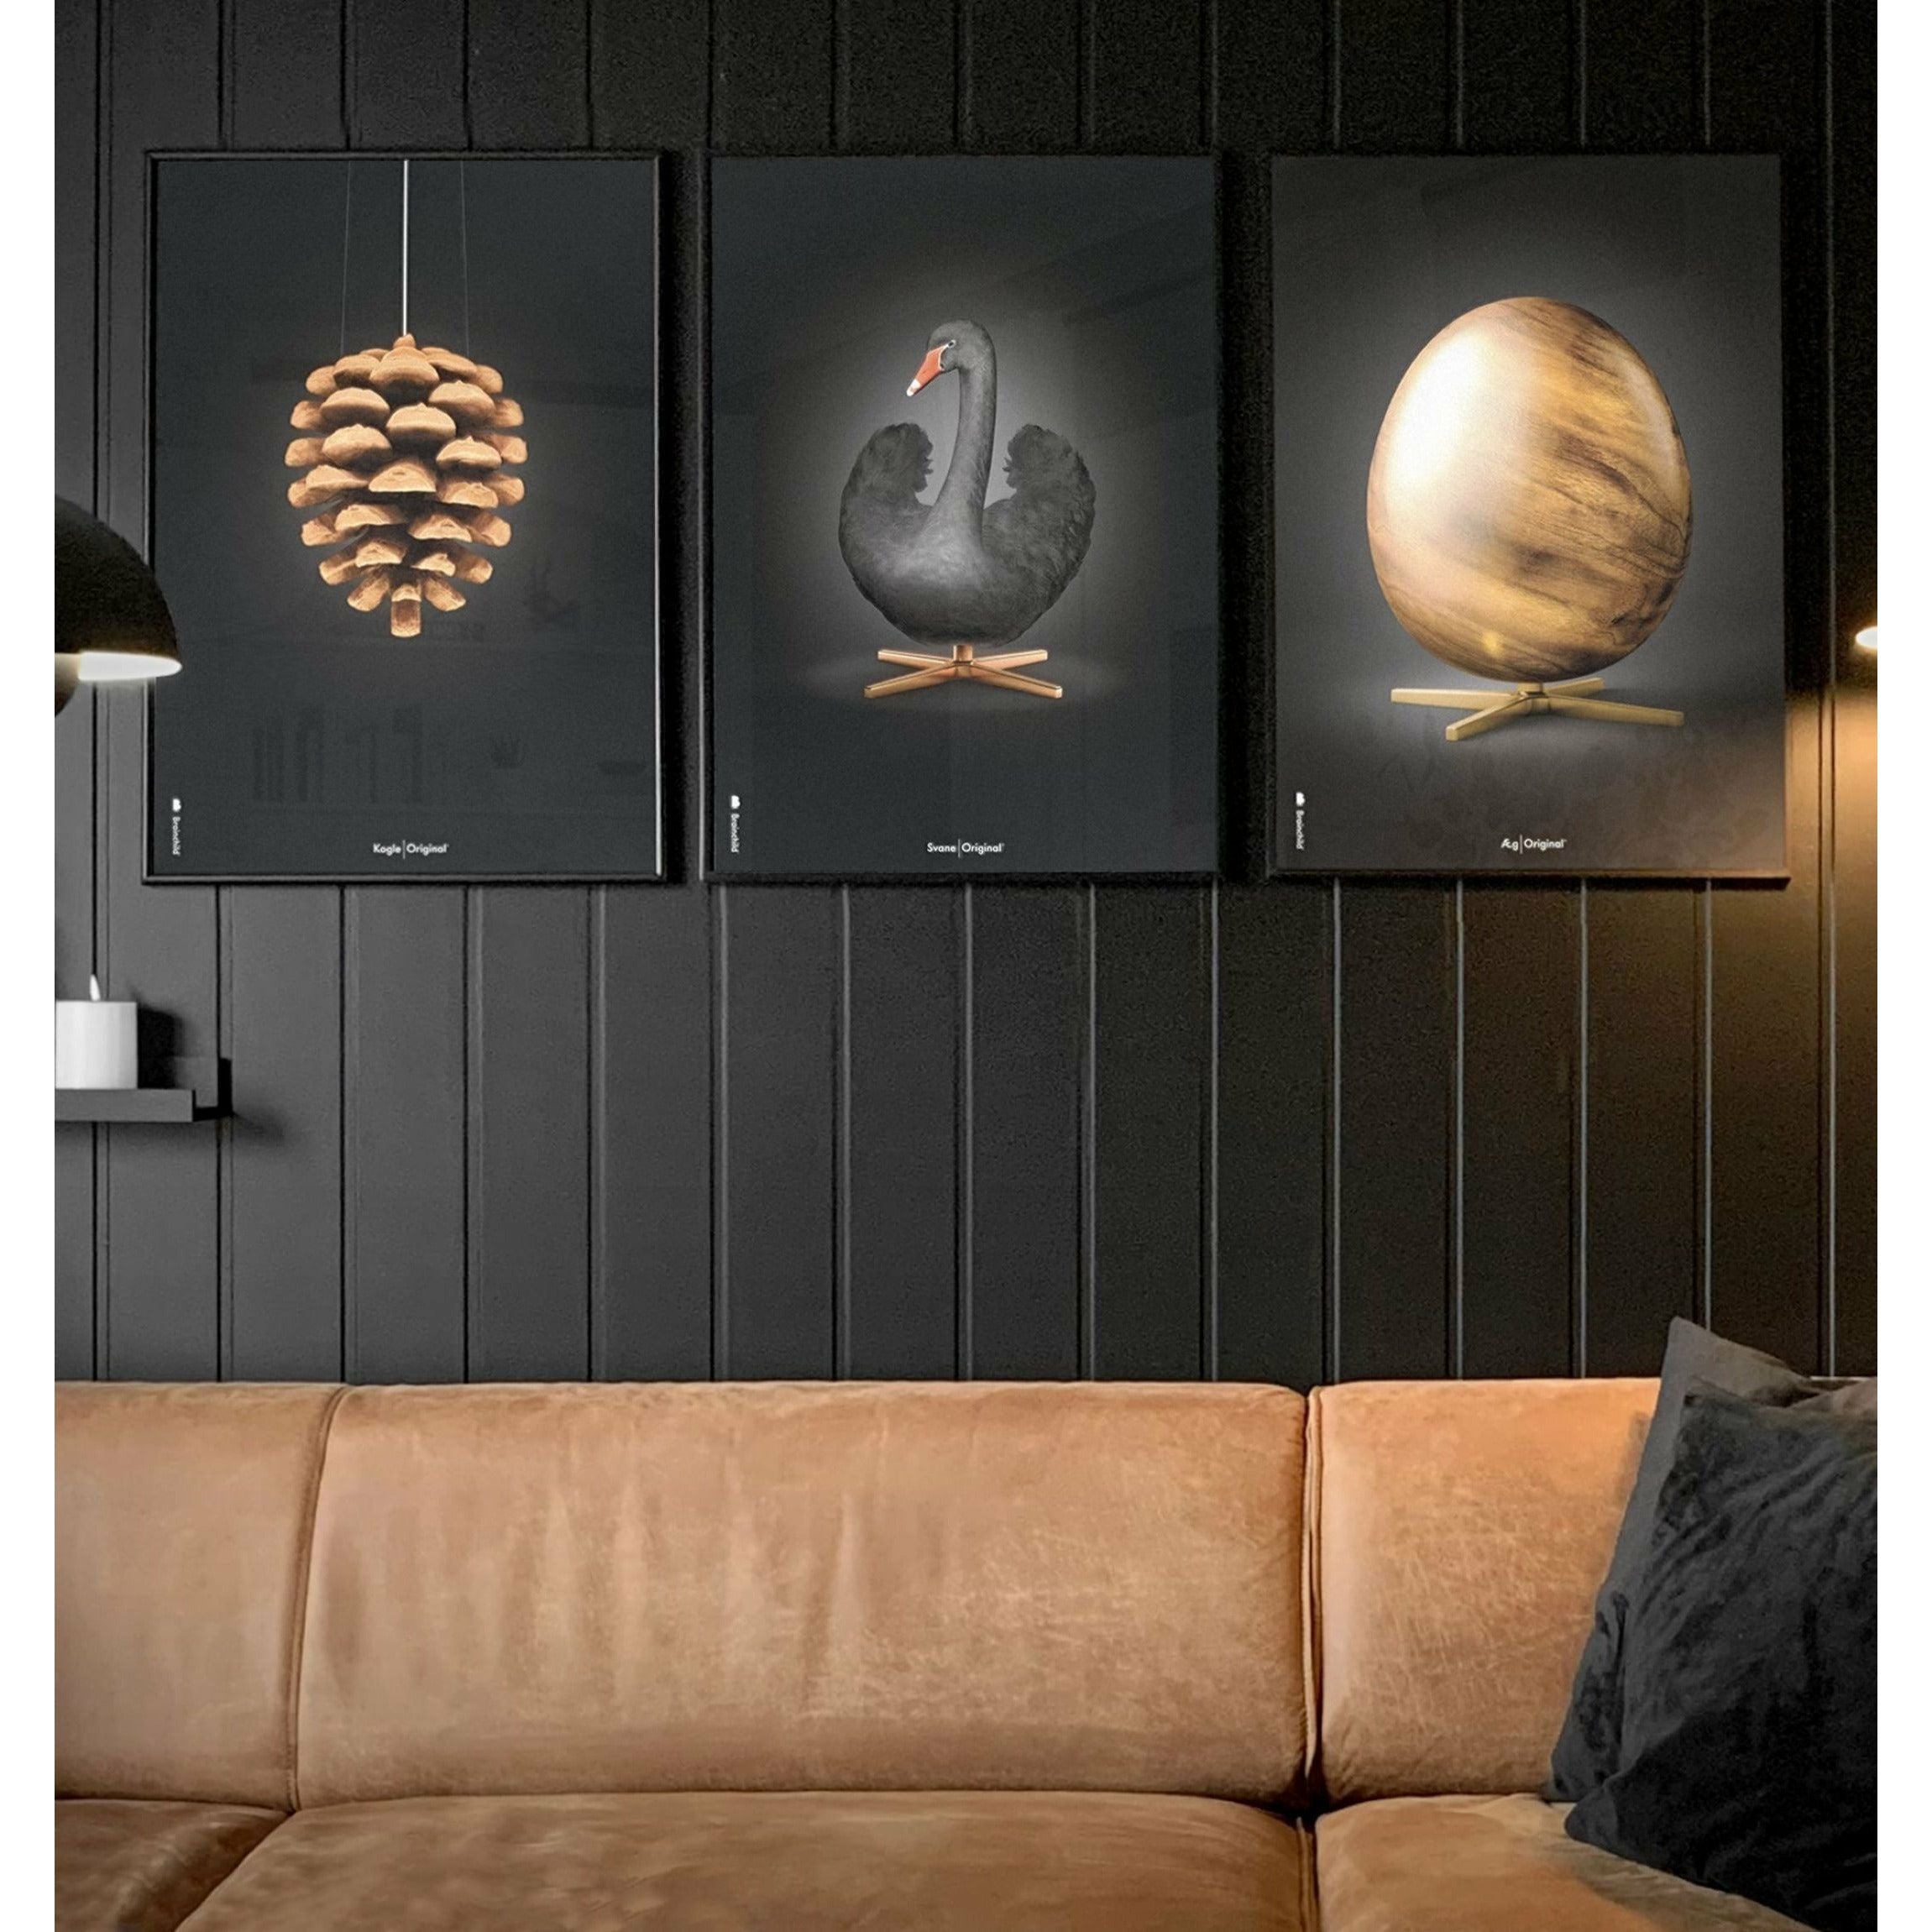 Pomysły plakat jaja, rama wykonana z jasnego drewna 70x100 cm, czarny